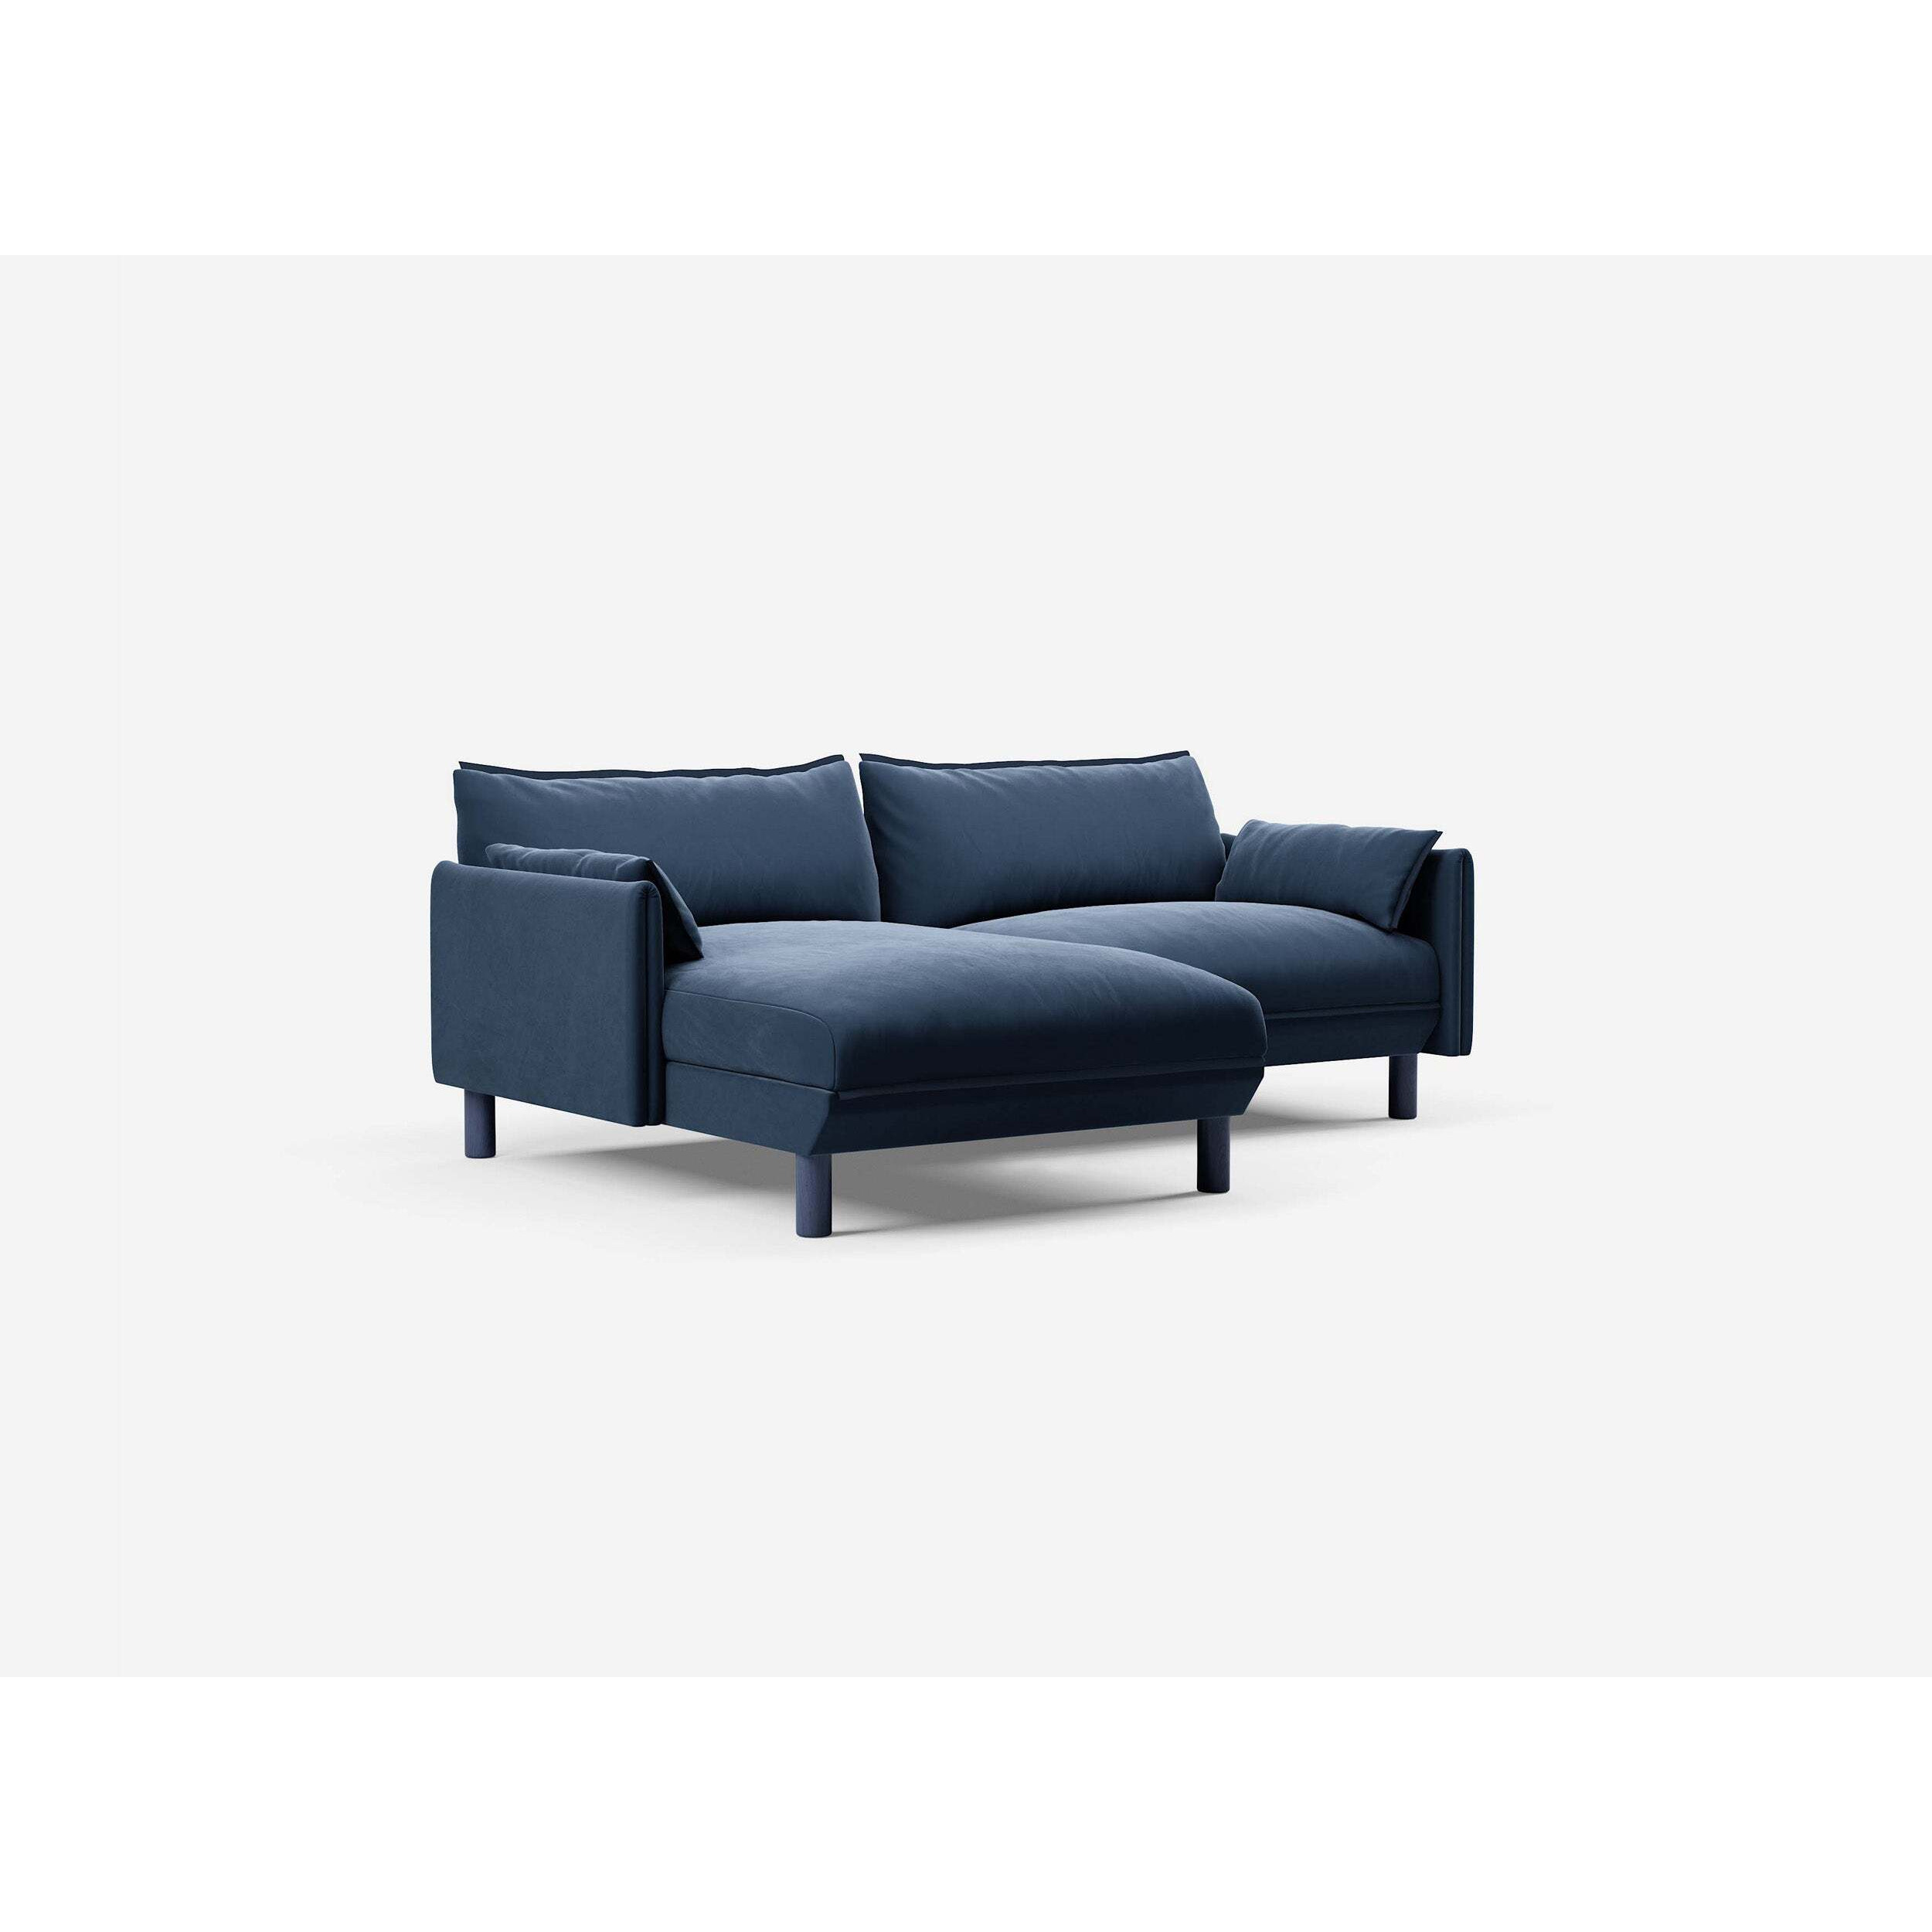 3 Seater LH Chaise Sofa - Midnight Blue Velvet - image 1